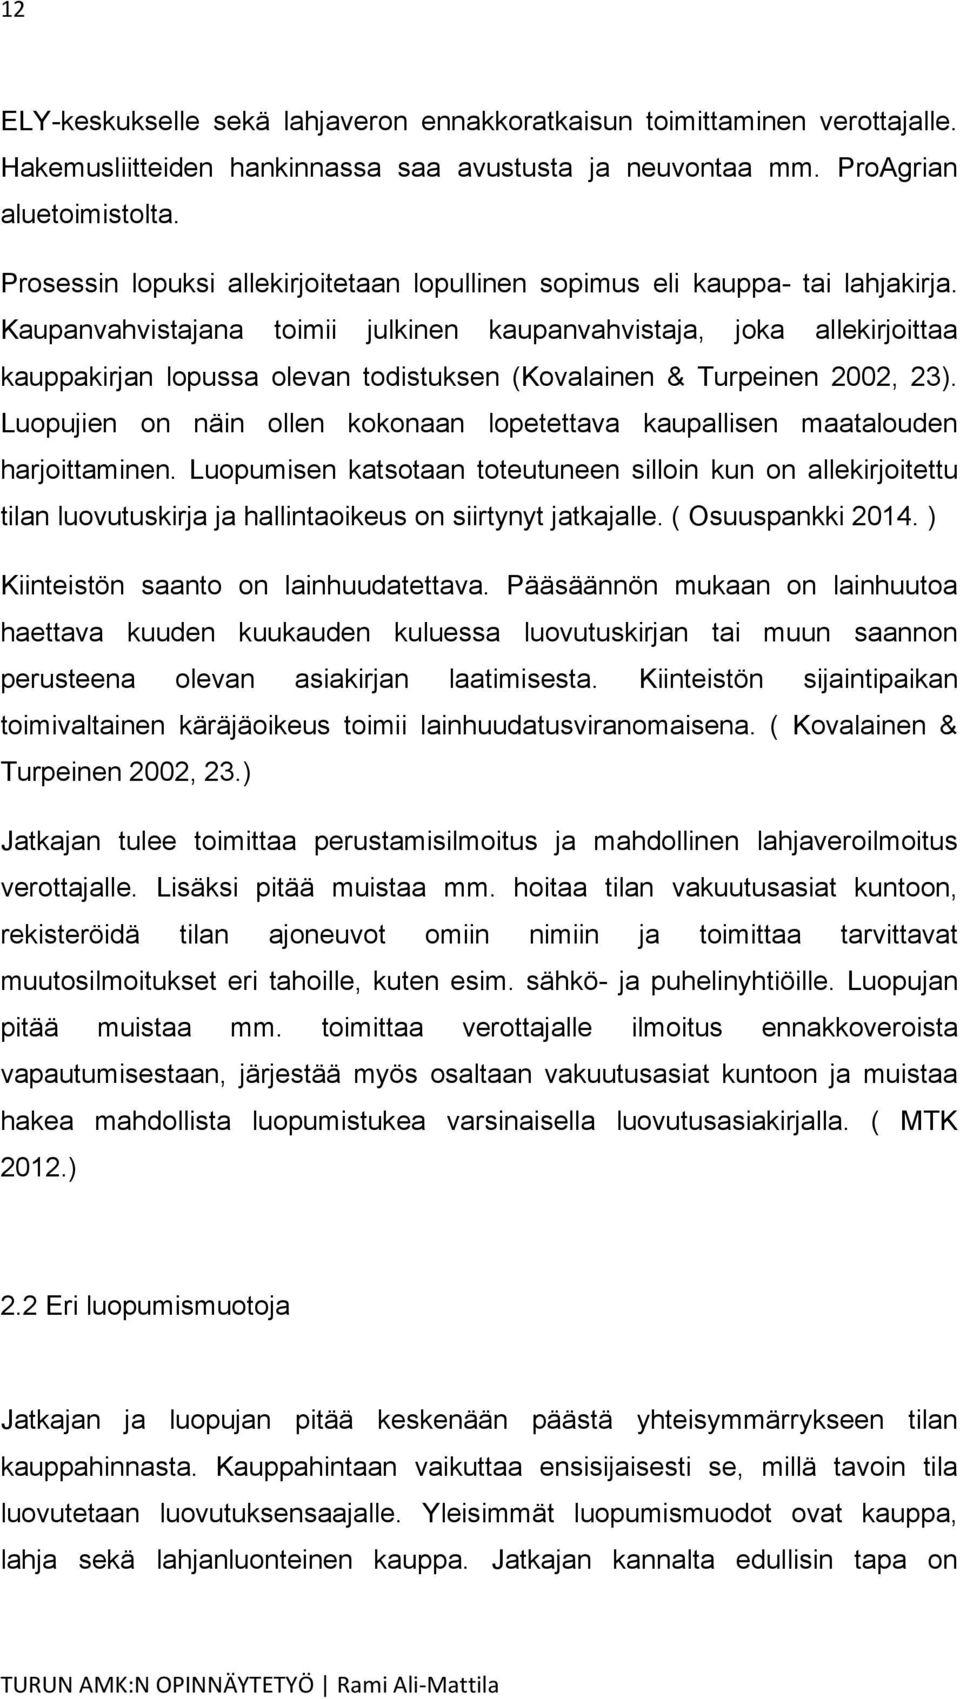 Kaupanvahvistajana toimii julkinen kaupanvahvistaja, joka allekirjoittaa kauppakirjan lopussa olevan todistuksen (Kovalainen & Turpeinen 2002, 23).